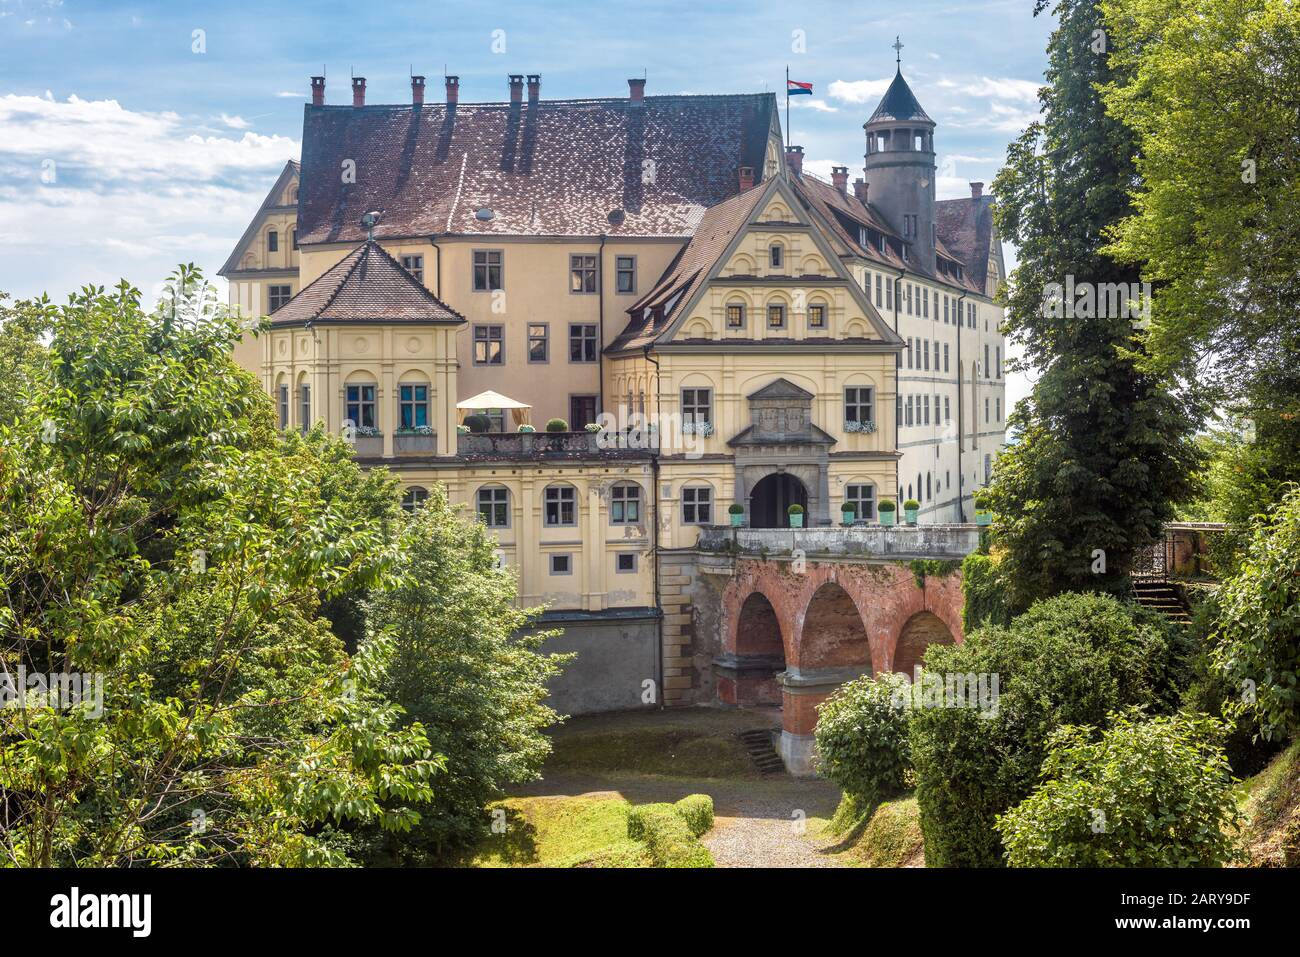 Schloss Heiligenberg im Linzgau. Dieses Renaissance-Schloss ist ein Wahrzeichen von Baden-Württemberg. Blick auf das alte Schloss im Garten. Szenerie von Stockfoto